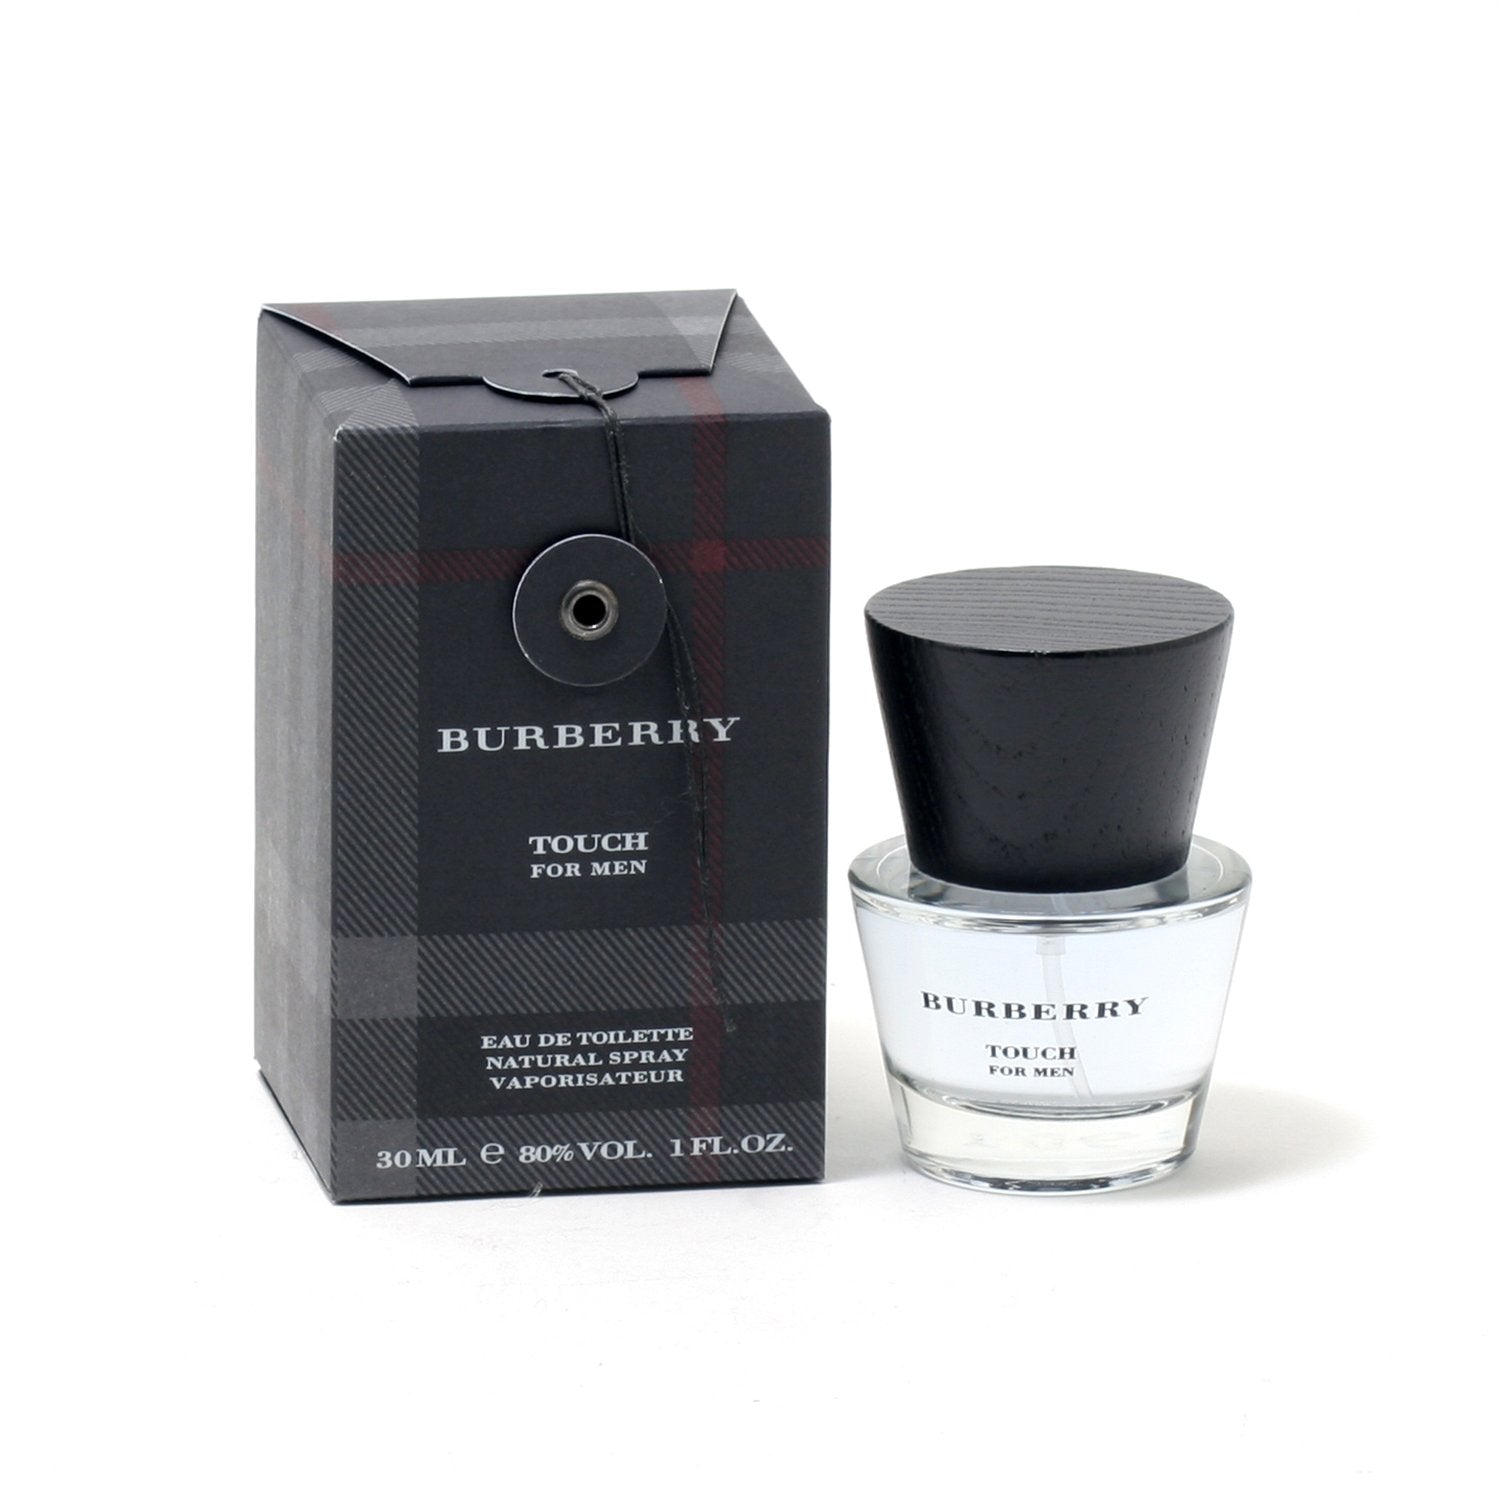 BURBERRY TOUCH FOR MEN - DE – TOILETTE Room EAU Fragrance SPRAY